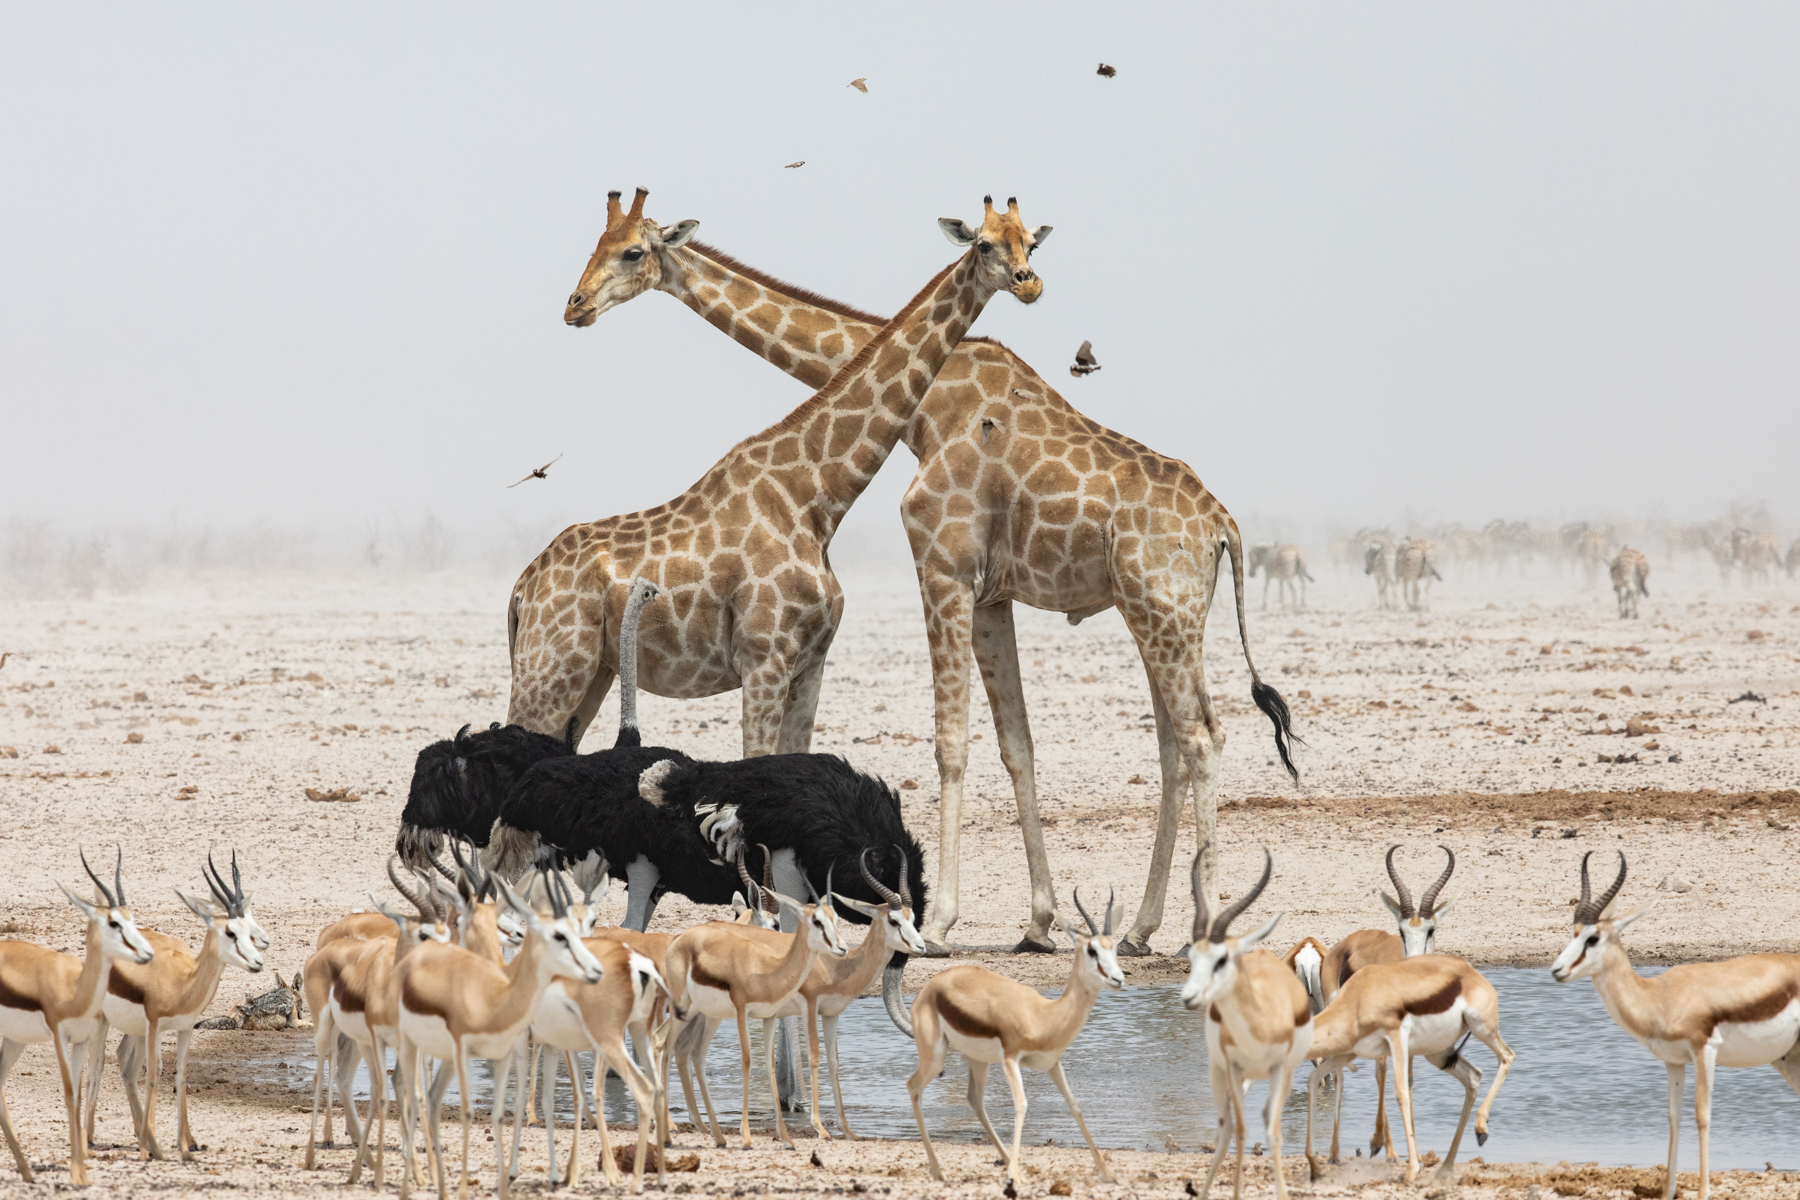 On safari in Etosha during our wildlife photography tour of Namibia